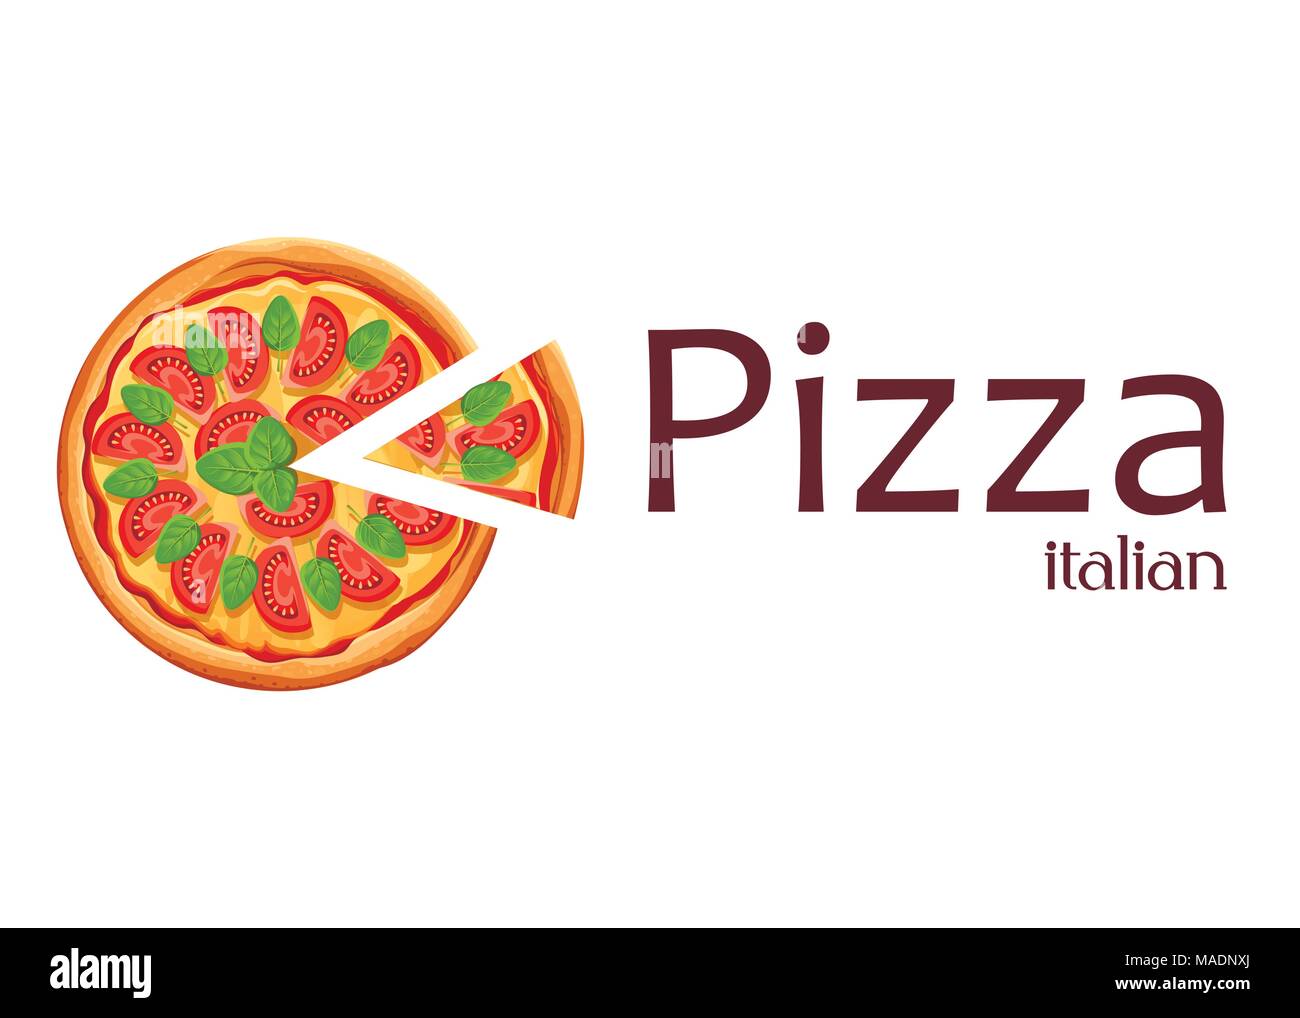 Pizza con slice. Margherita pizza con tomate, queso y orégano. Póster para diseño, restaurante, cafetería, pizzería. Ilustración vectorial aislada con Ilustración del Vector